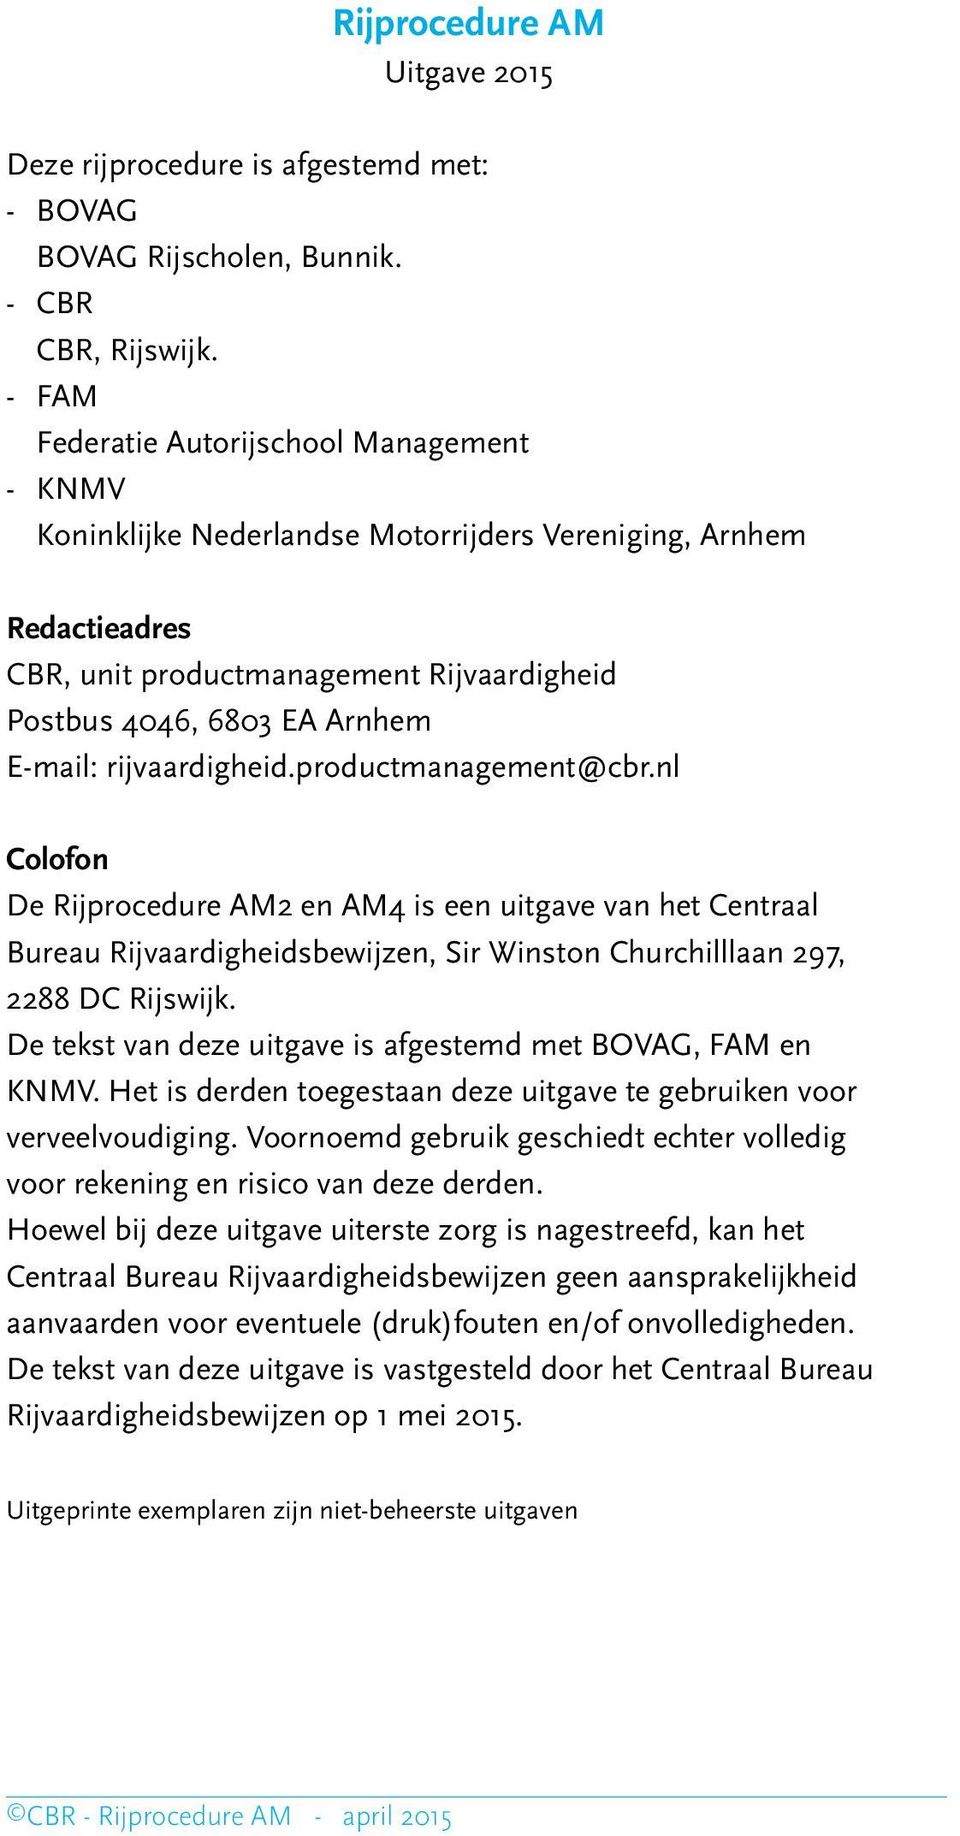 rijvaardigheid.productmanagement@cbr.nl Colofon De Rijprocedure AM2 en AM4 is een uitgave van het Centraal Bureau Rijvaardigheidsbewijzen, Sir Winston Churchilllaan 297, 2288 DC Rijswijk.